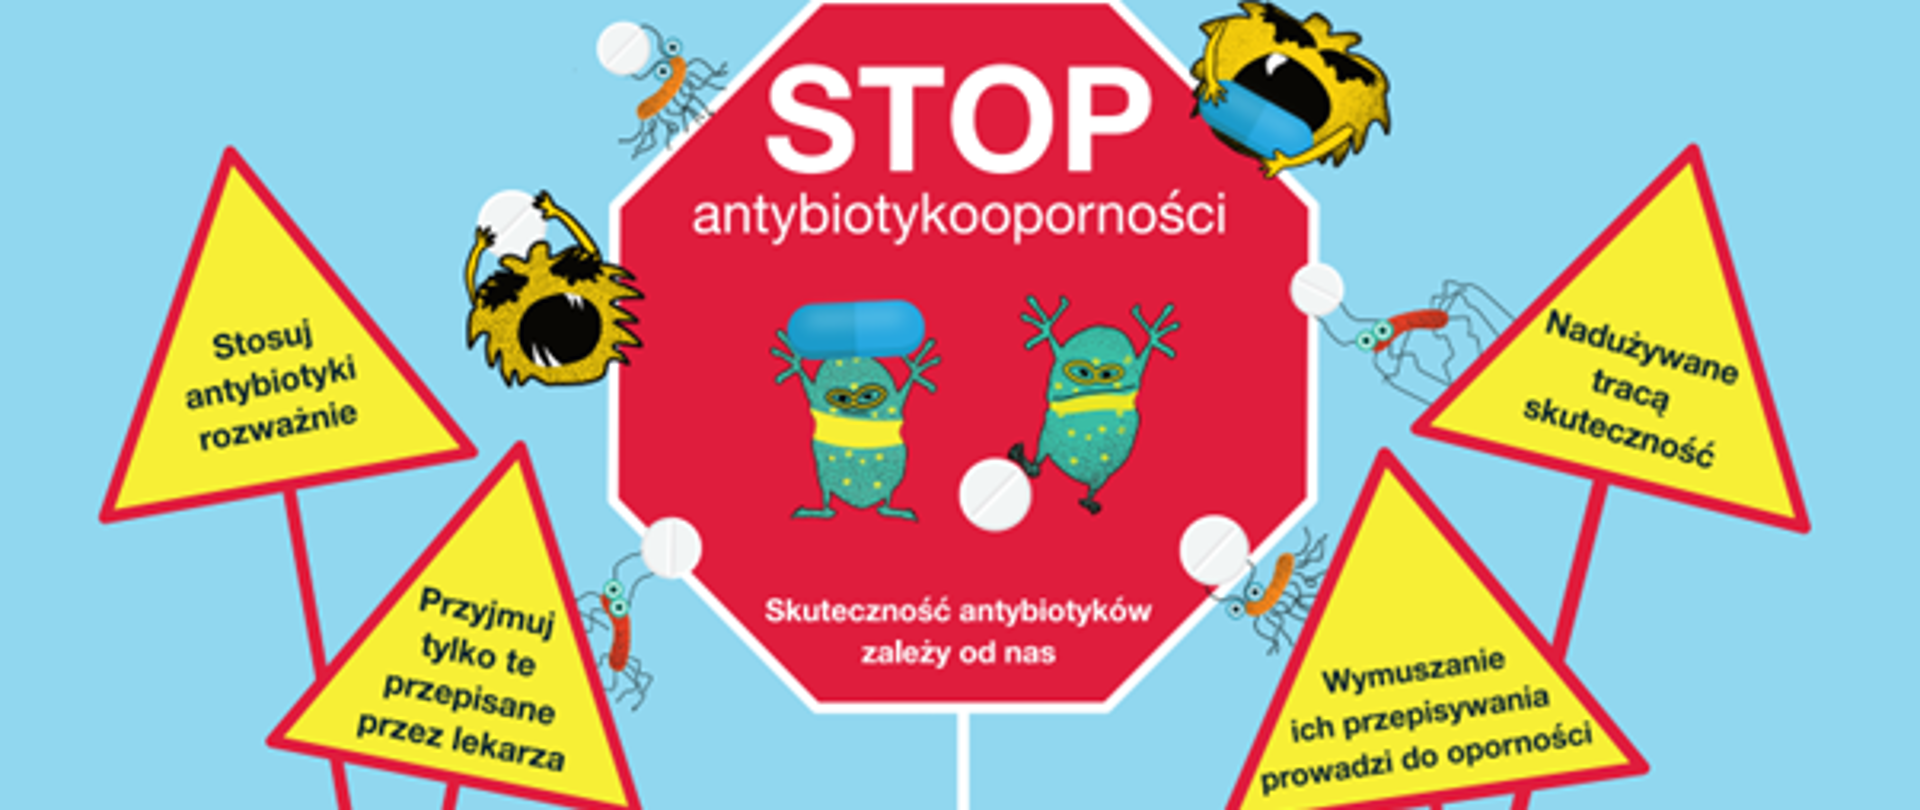 Stop_antybiotyki